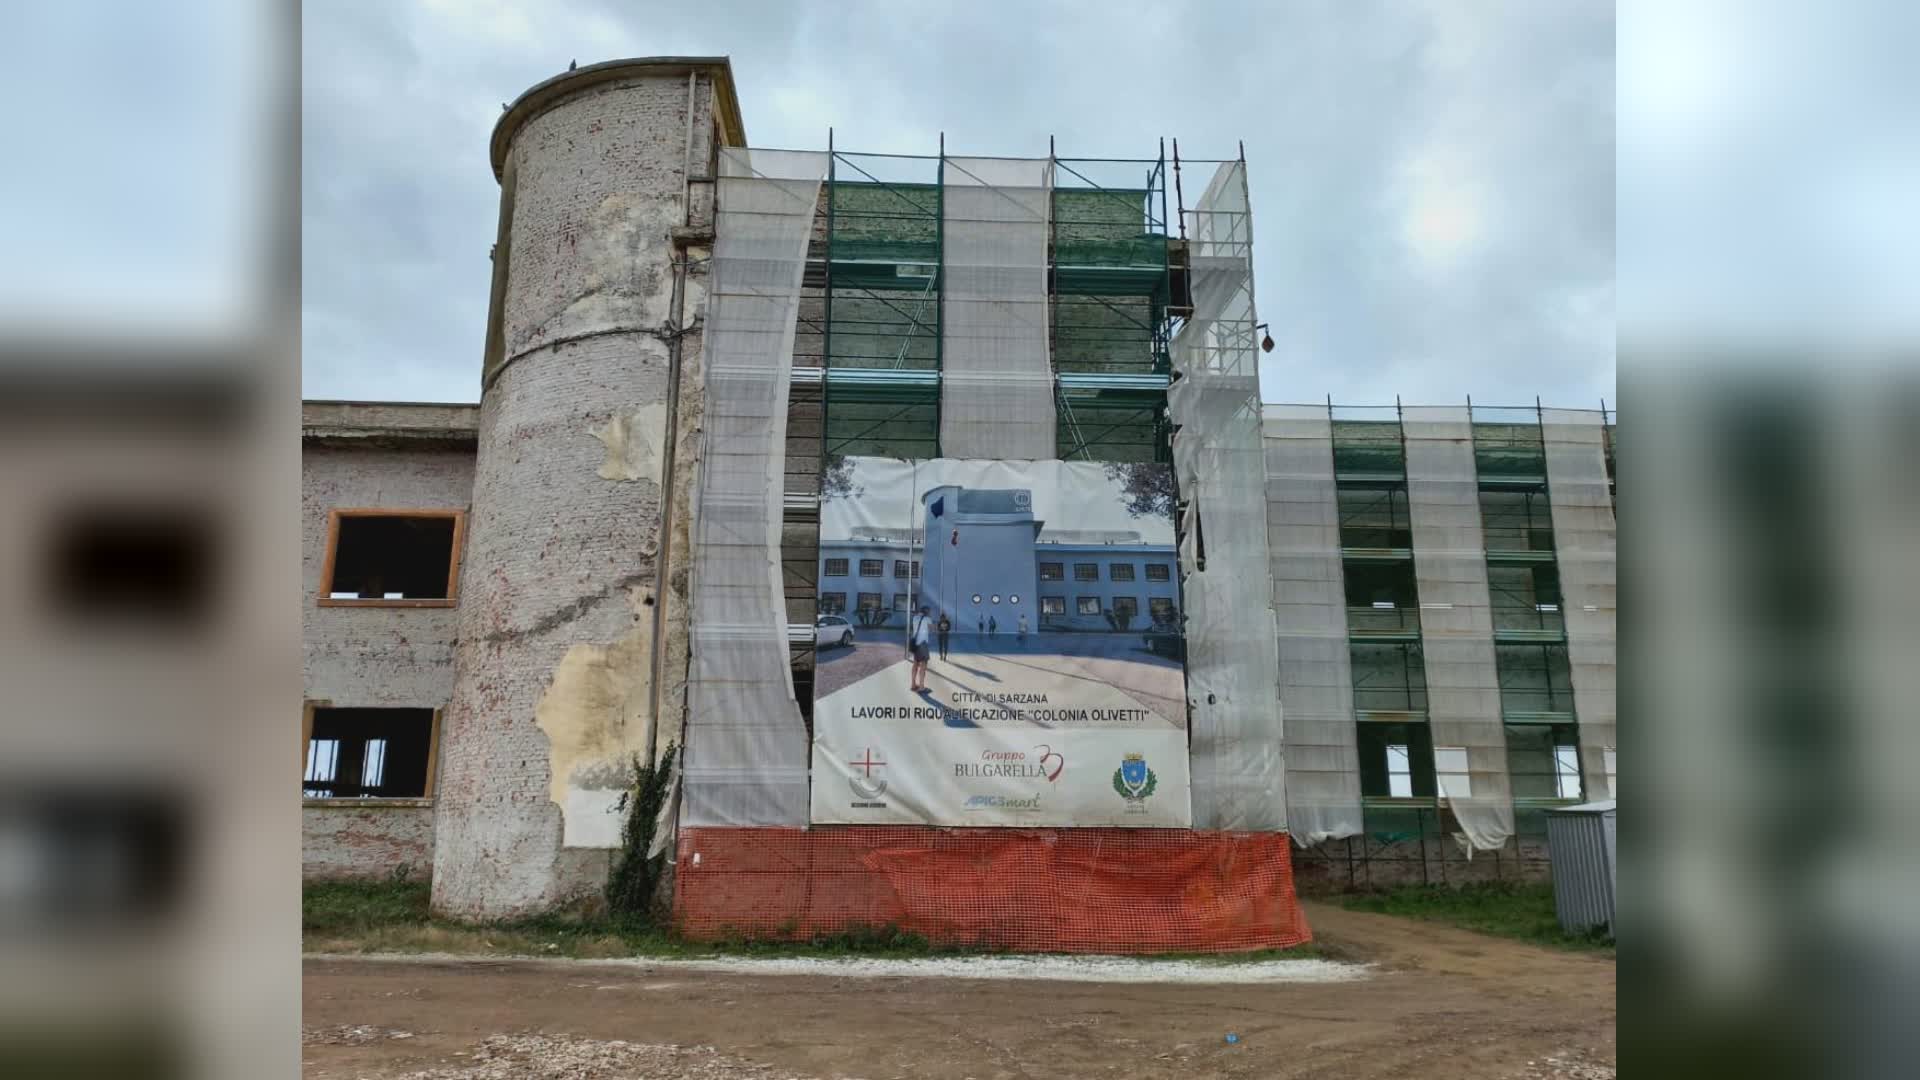 Marinella di Sarzana, il presidente Toti in visita ai cantieri dell'ex Colonia Olivetti: "In quest'area investimenti pubblici per oltre 50 milioni"